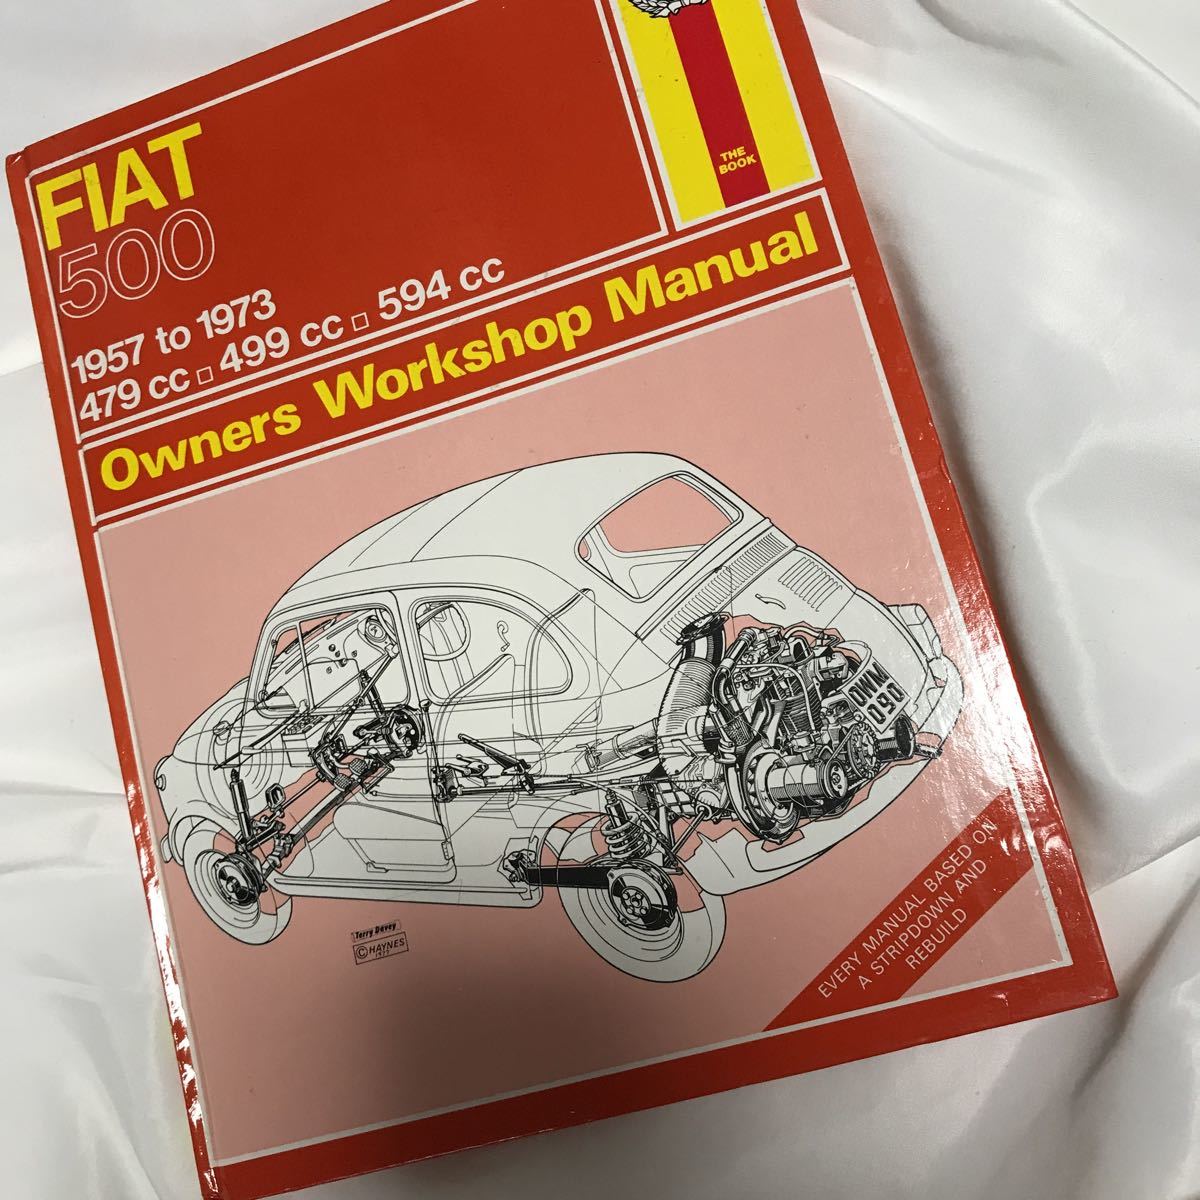 一番の贈り物 FIAT500 ワークショップマニュアル日本語版